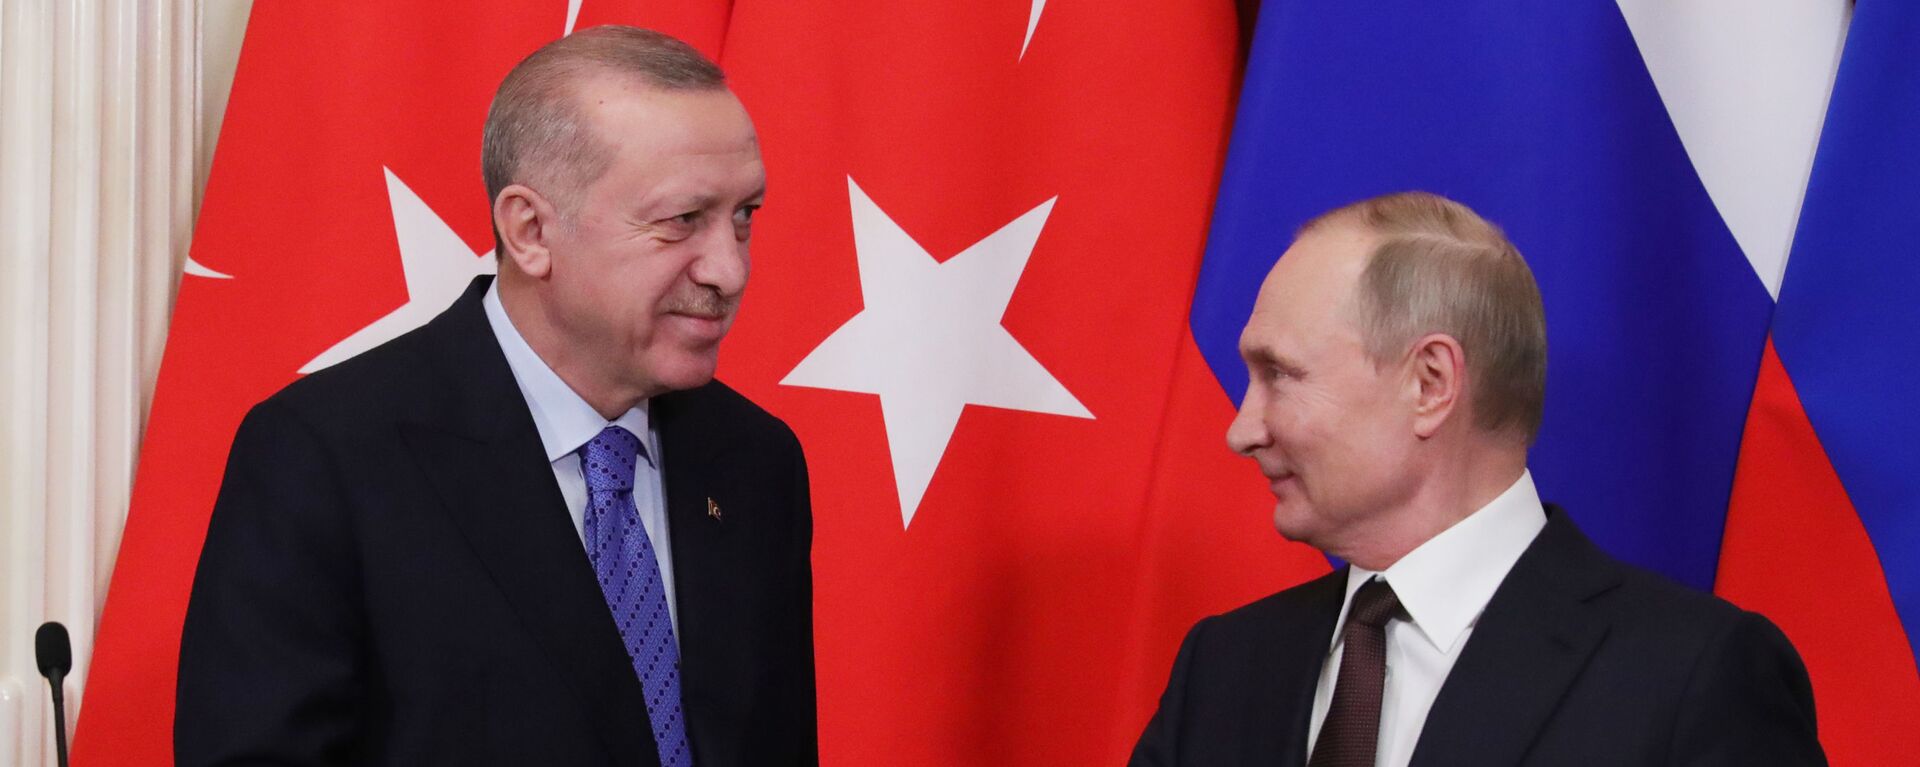 Erdoğan, Putin - Sputnik Türkiye, 1920, 05.05.2021